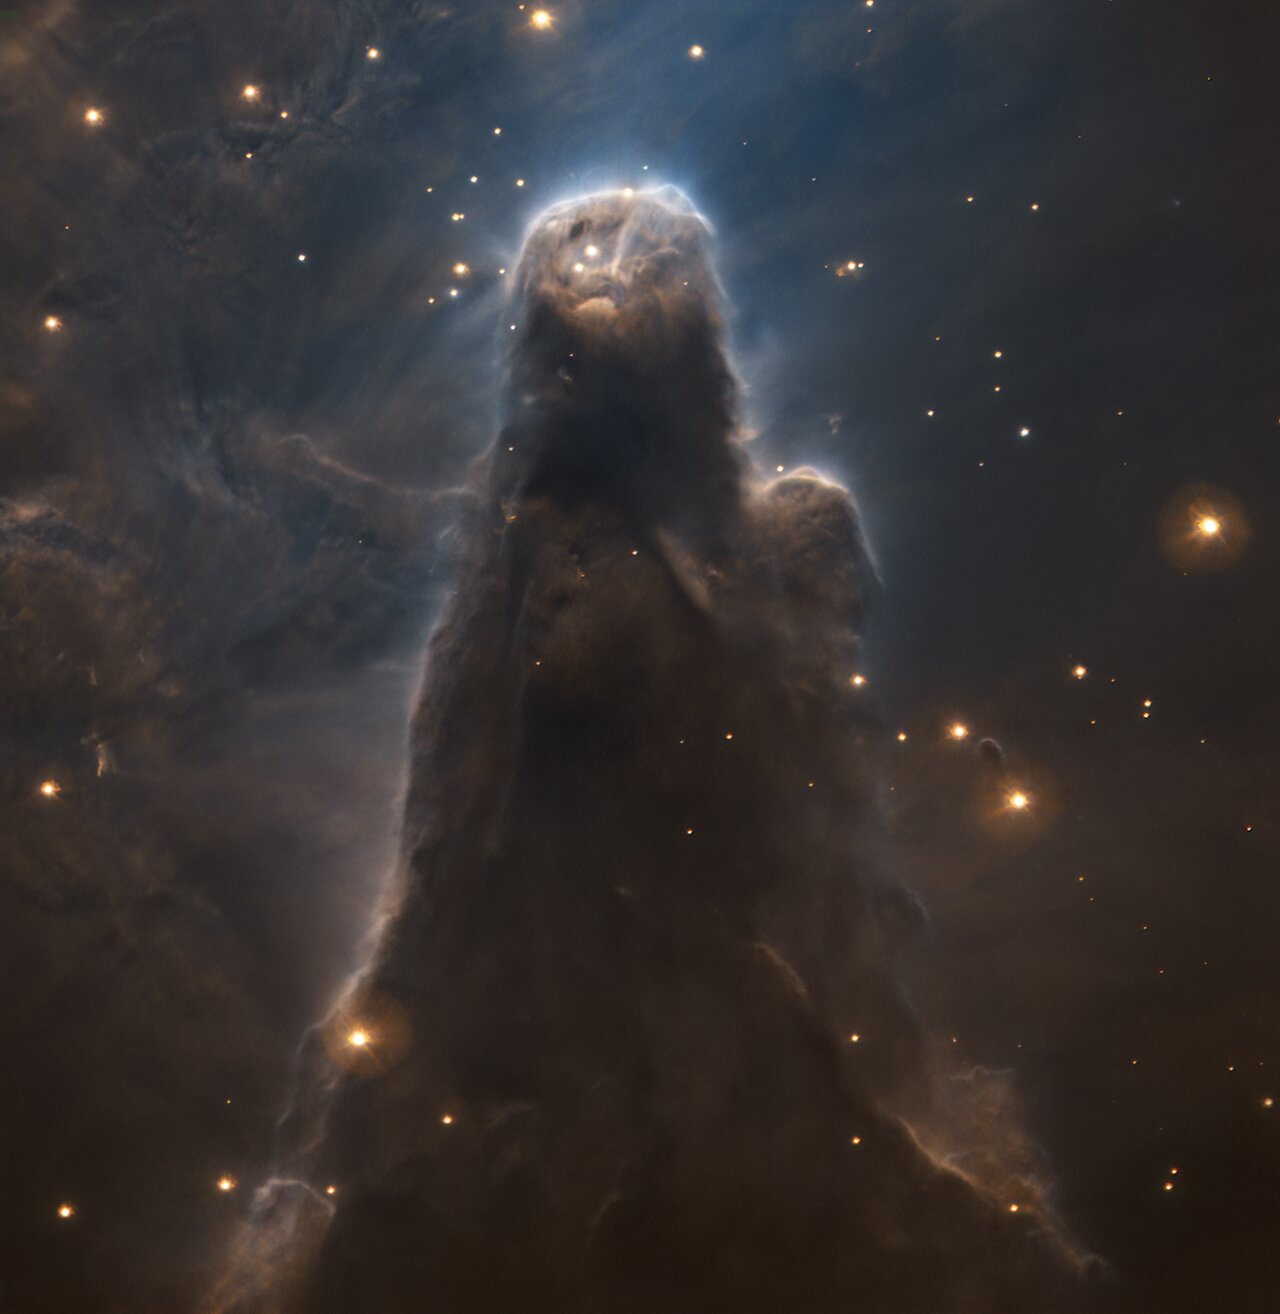 欧洲南方天文台ESO发布麒麟座内令人毛骨悚然的NGC 2264暗星云新图象